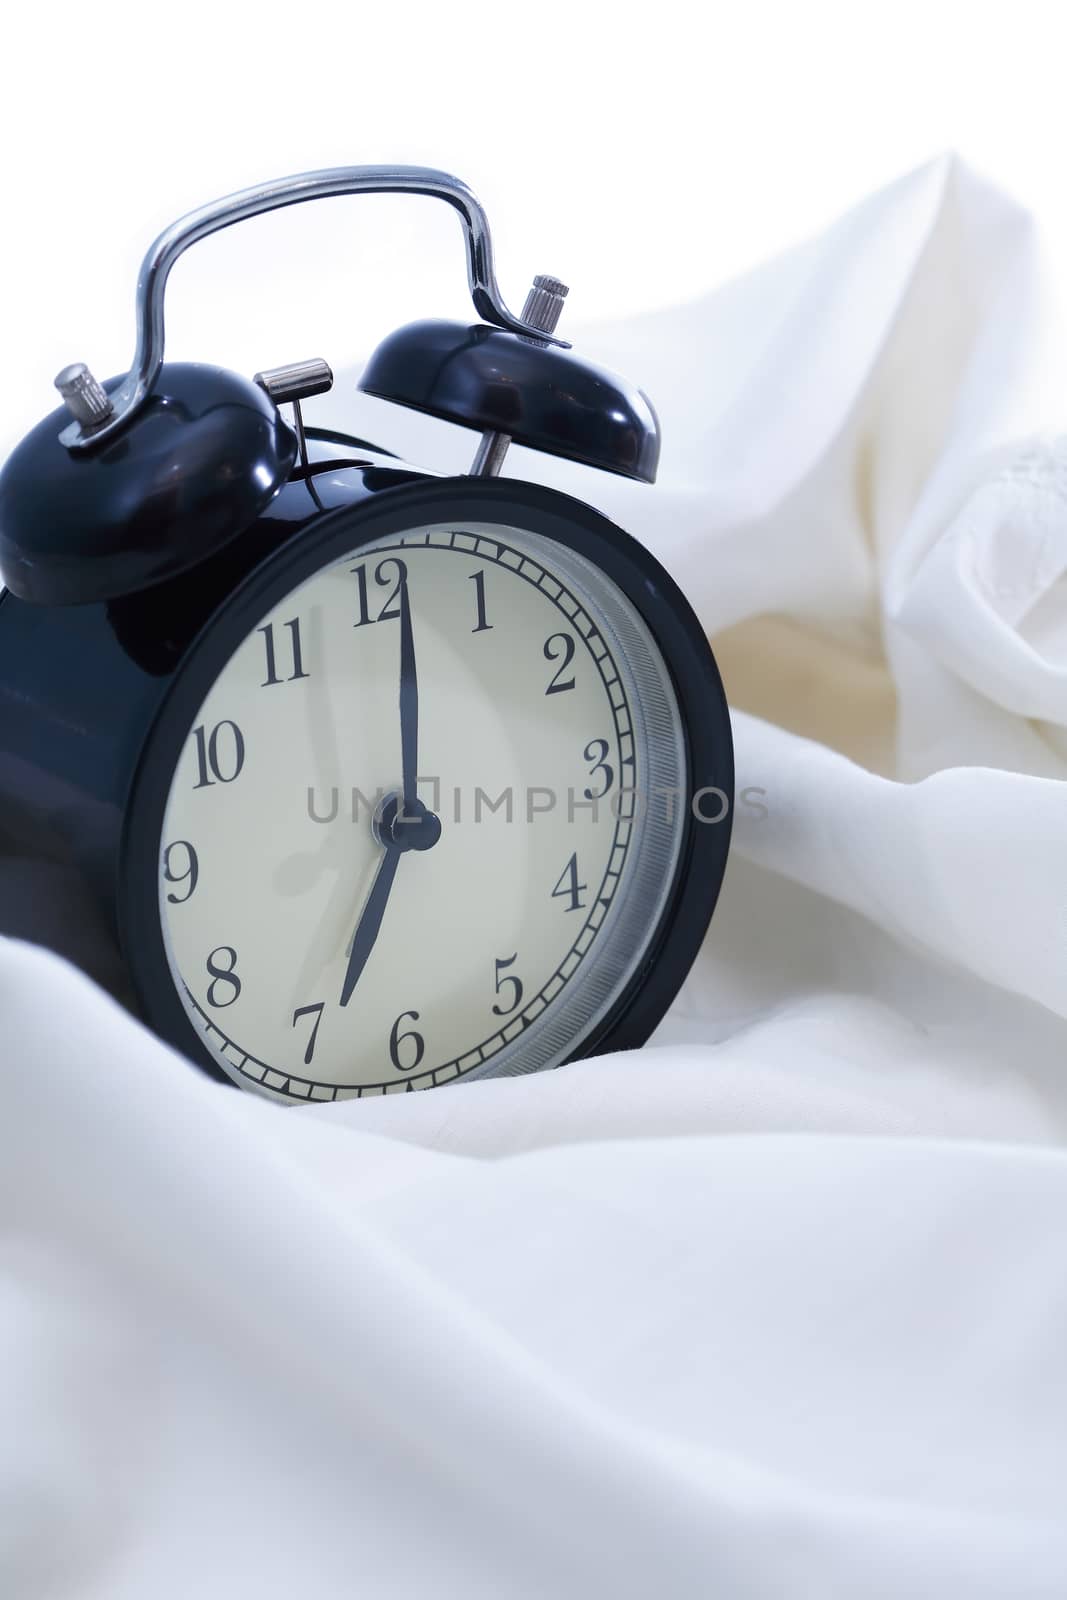 Alarm Clock In Bed by kvkirillov